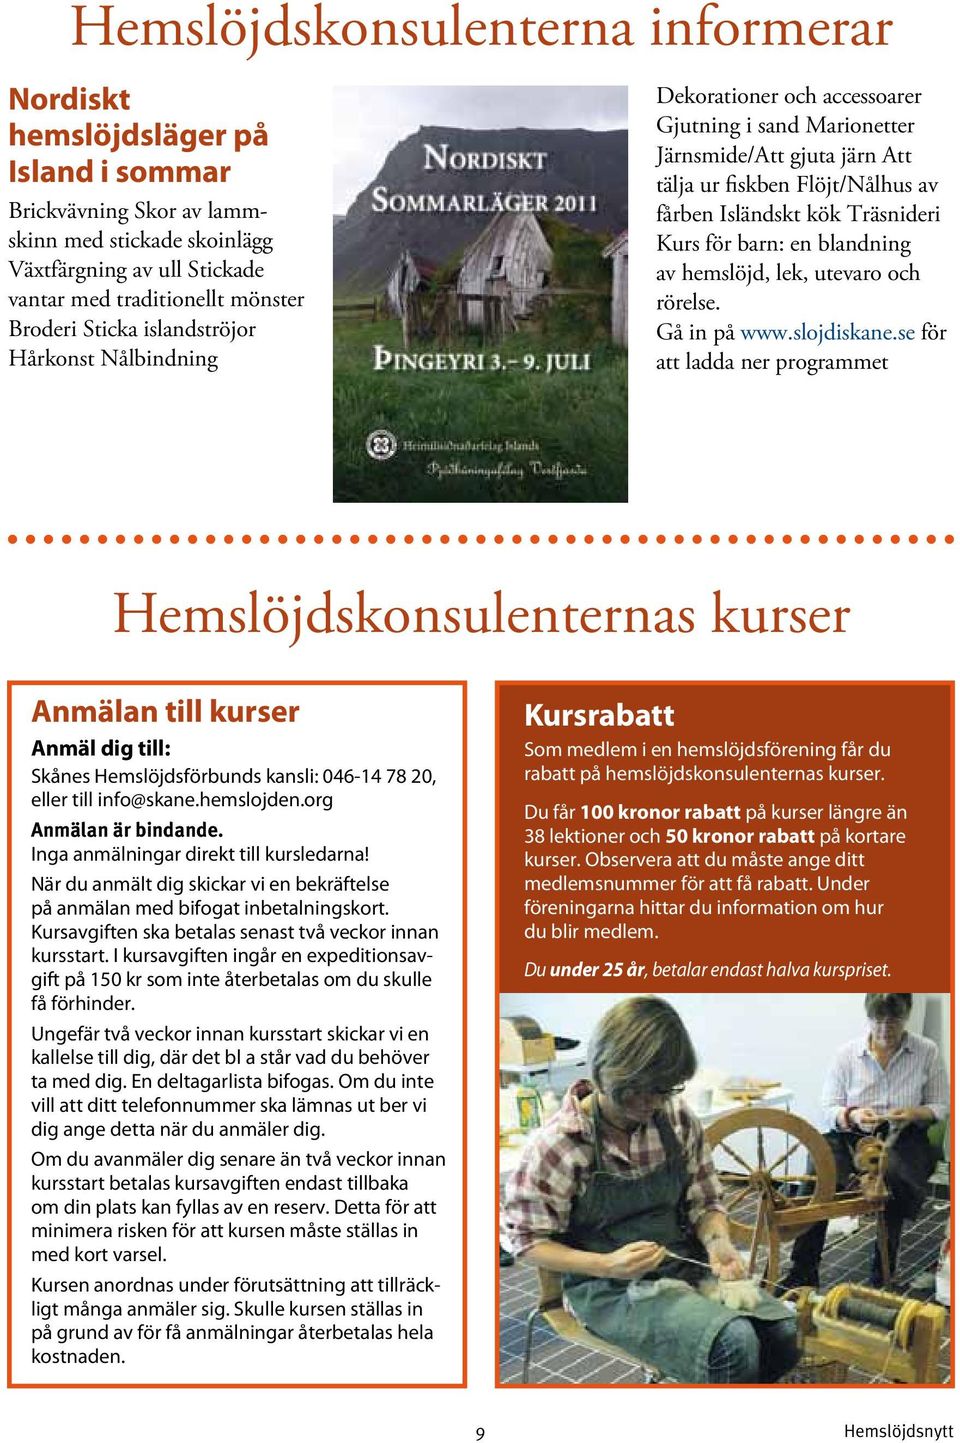 Träsnideri Kurs för barn: en blandning av hemslöjd, lek, utevaro och rörelse. Gå in på www.slojdiskane.